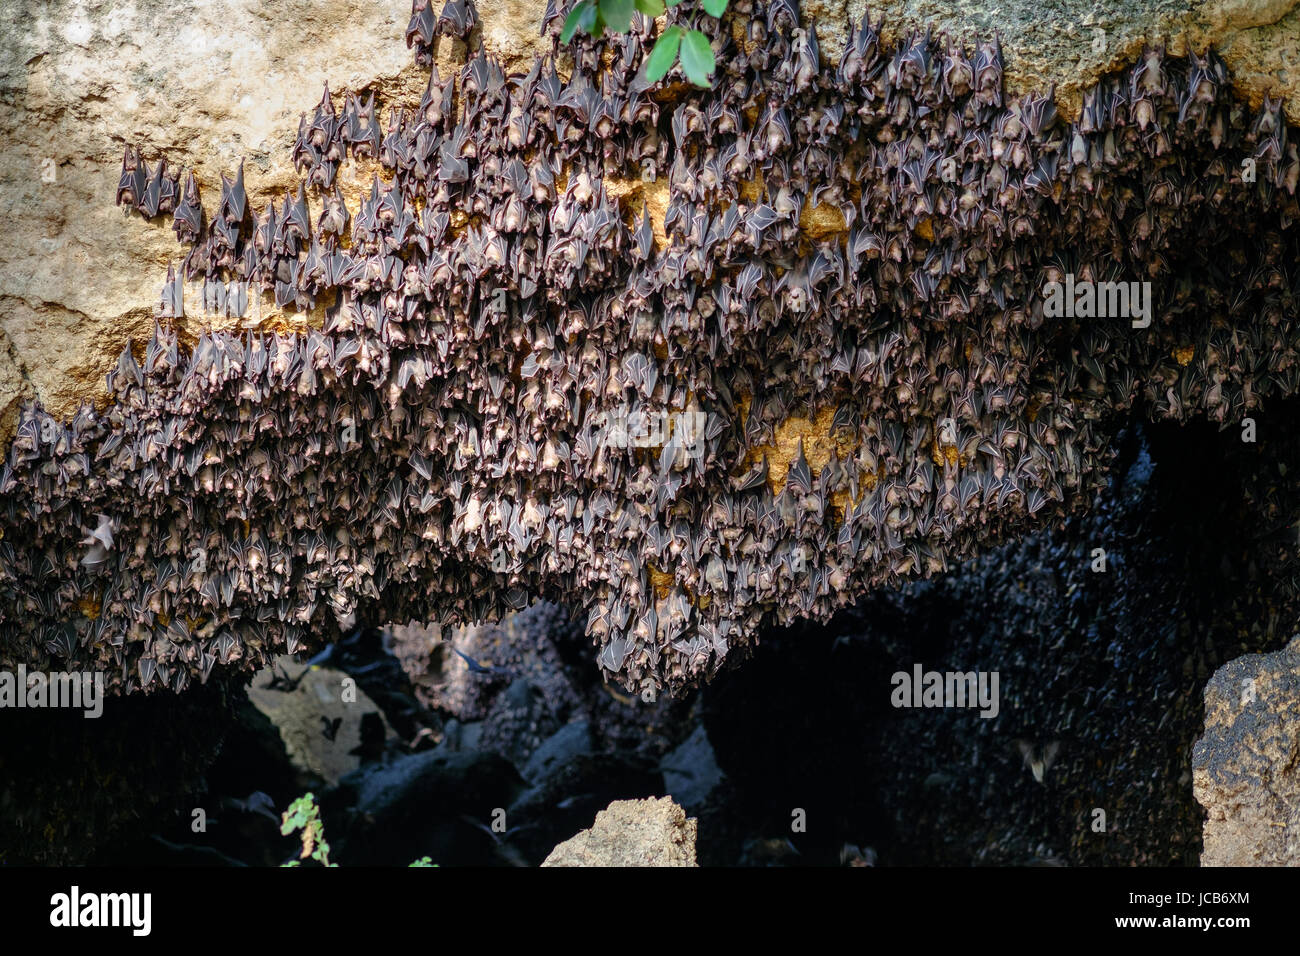 Fruit bats colony Stock Photo